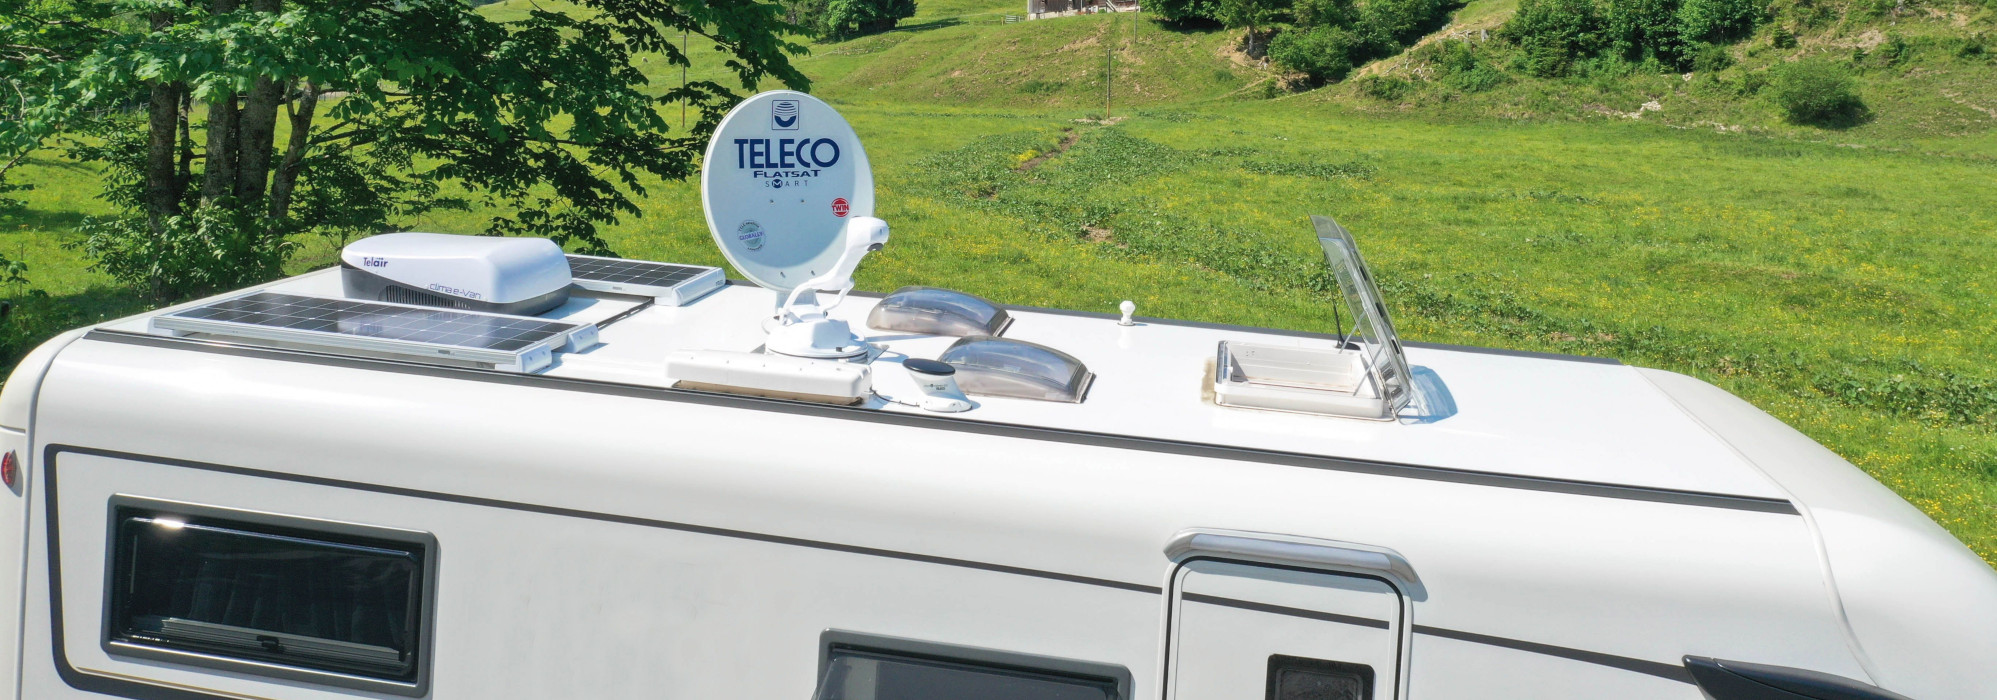 Teleco présente un nouveau module photovoltaïque rigide de 130 watts